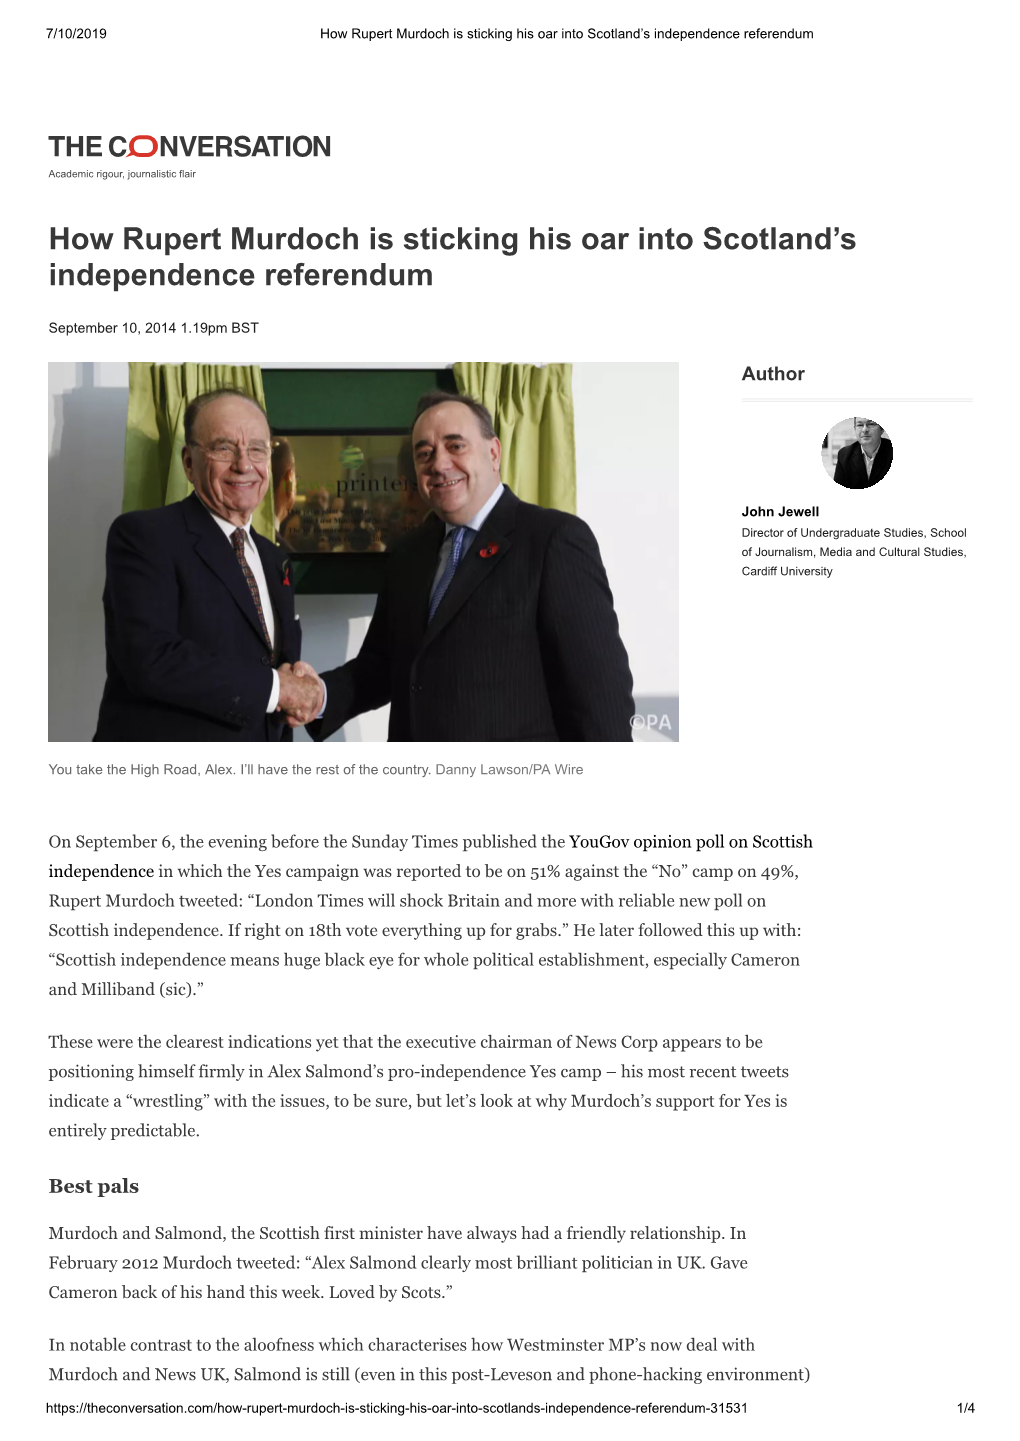 How Rupert Murdoch Is Sticking His Oar Into Scotland's